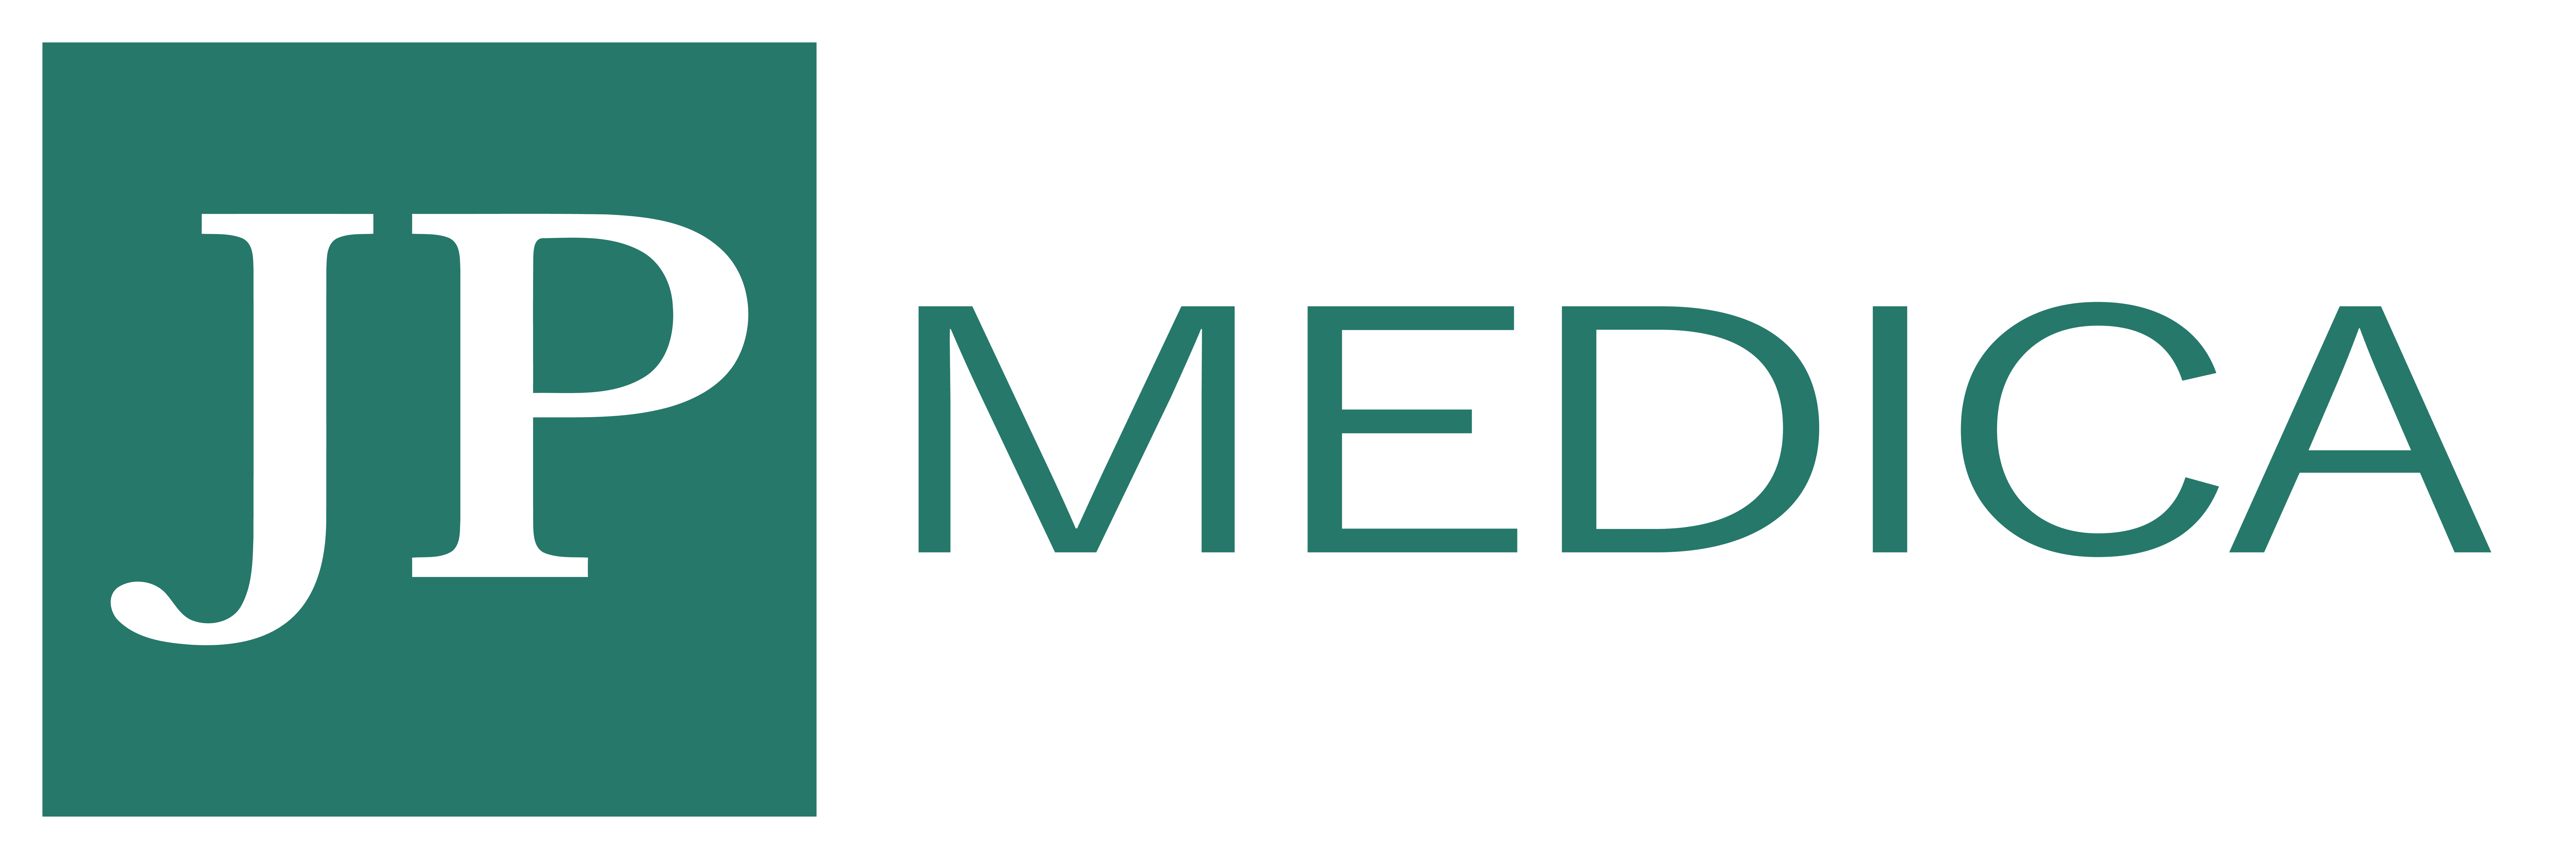 JP Medica - logo